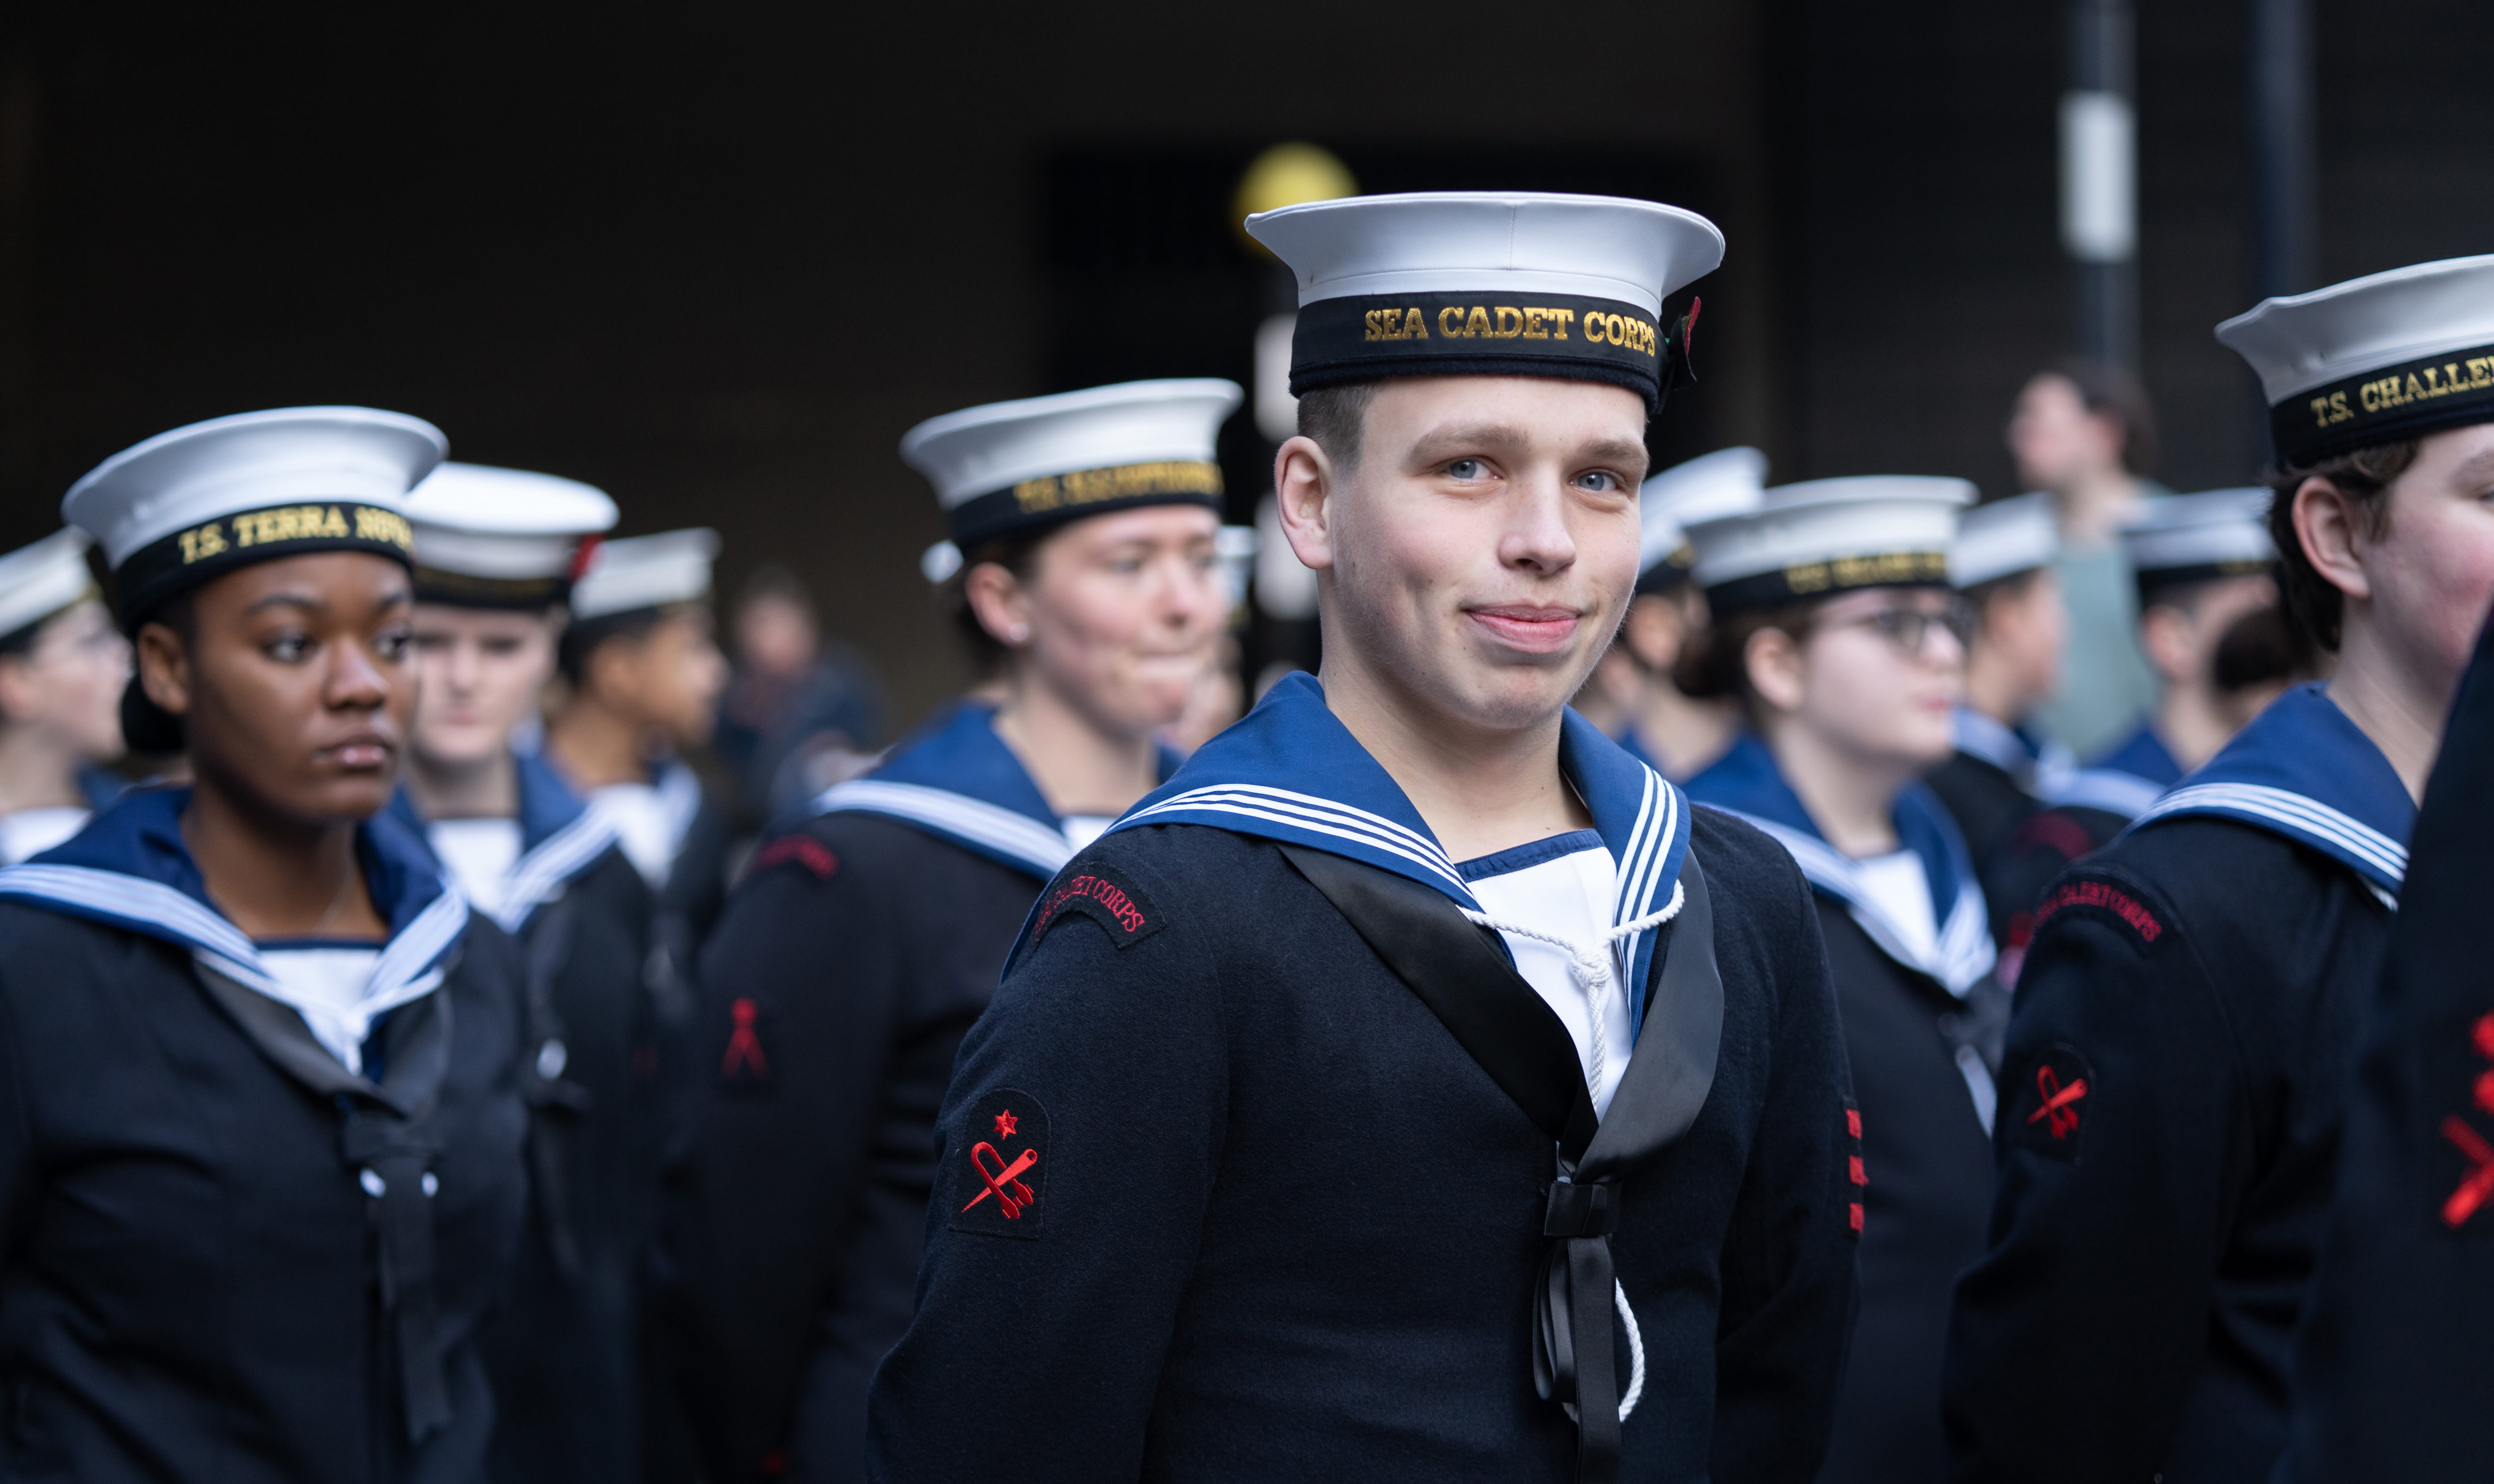 Sea Cadets